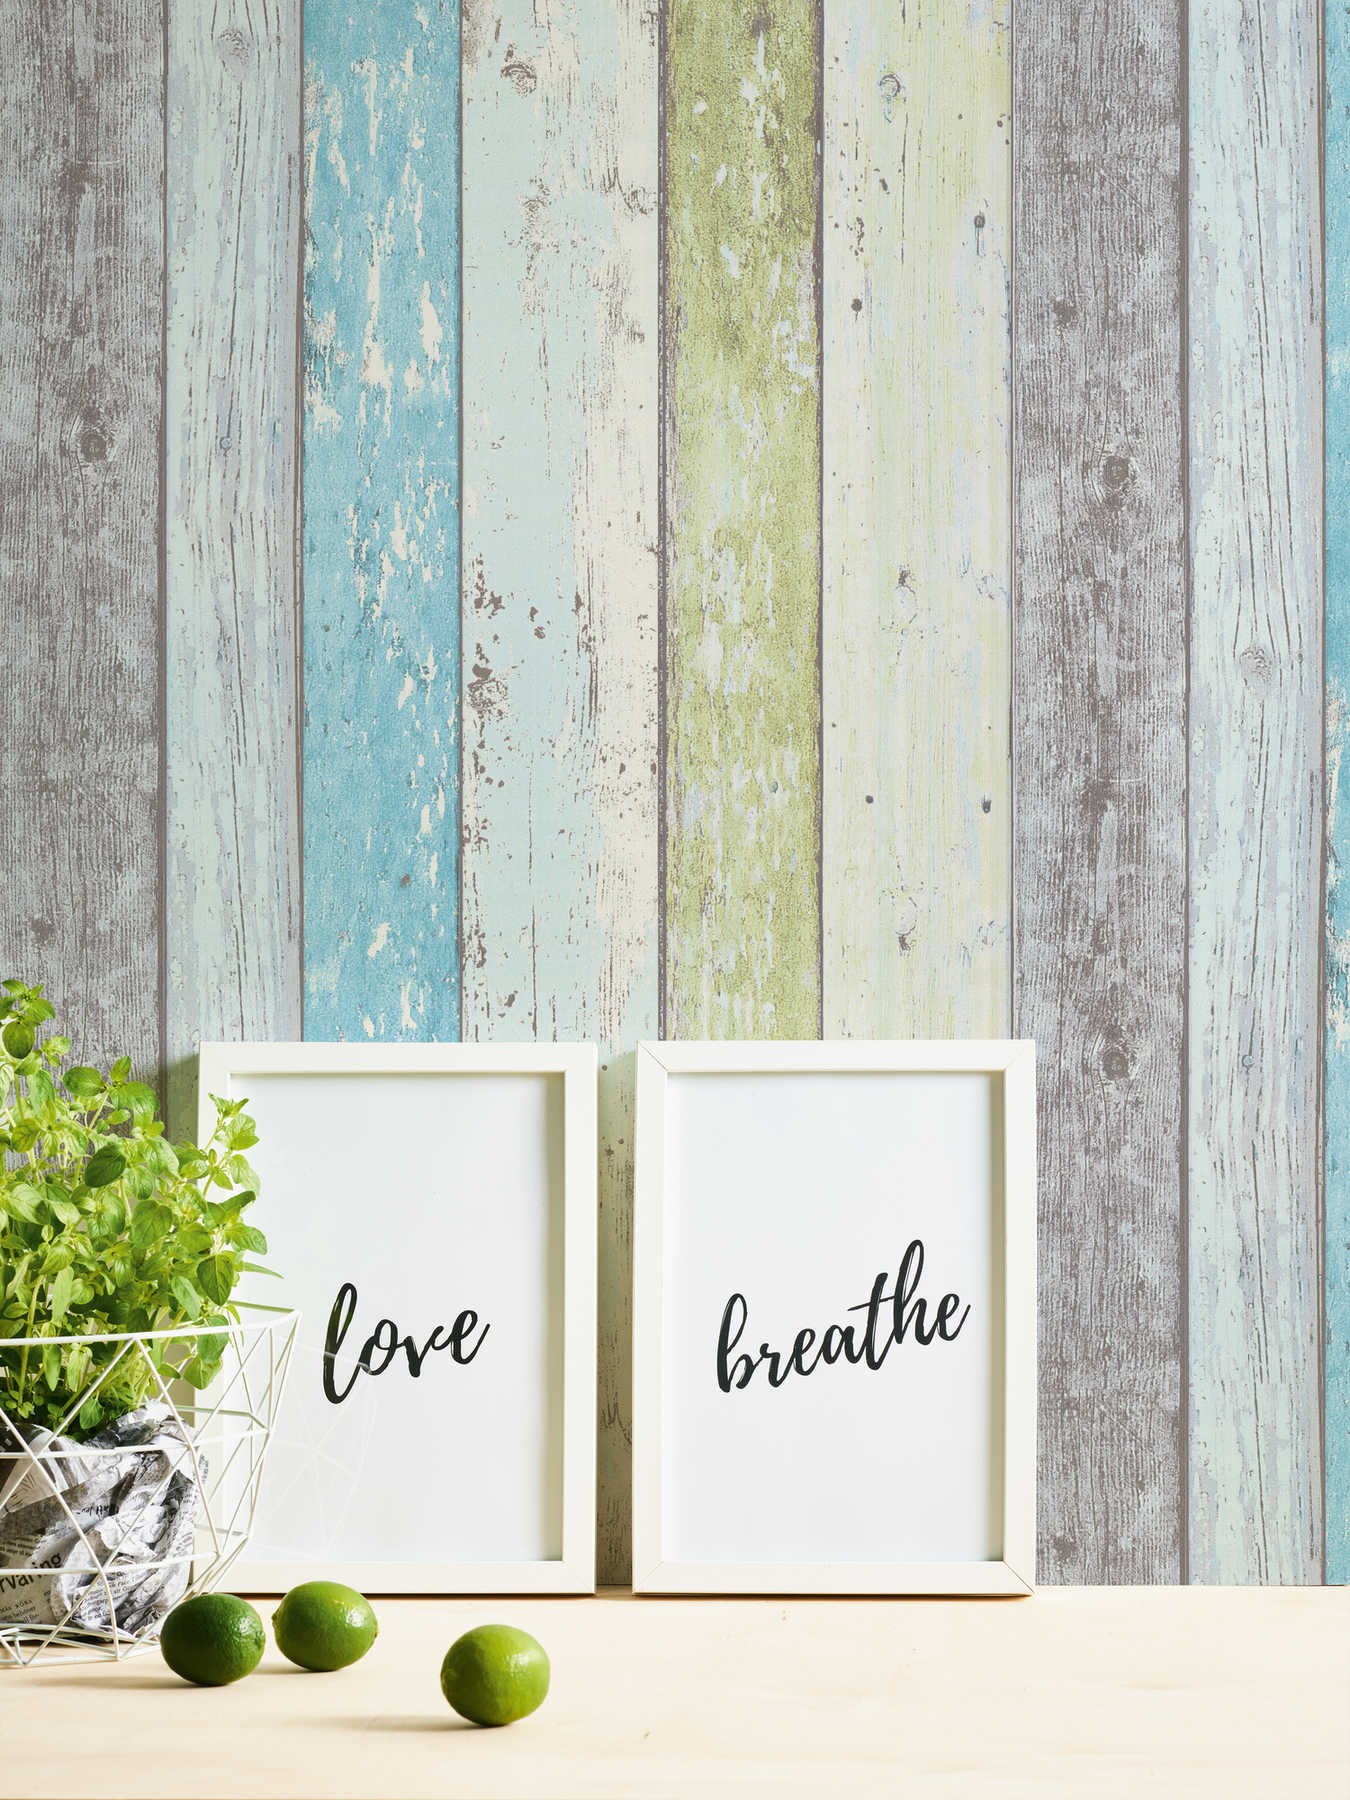             Papier peint bois avec aspect usé pour style vintage & maison de campagne - bleu, vert, blanc
        